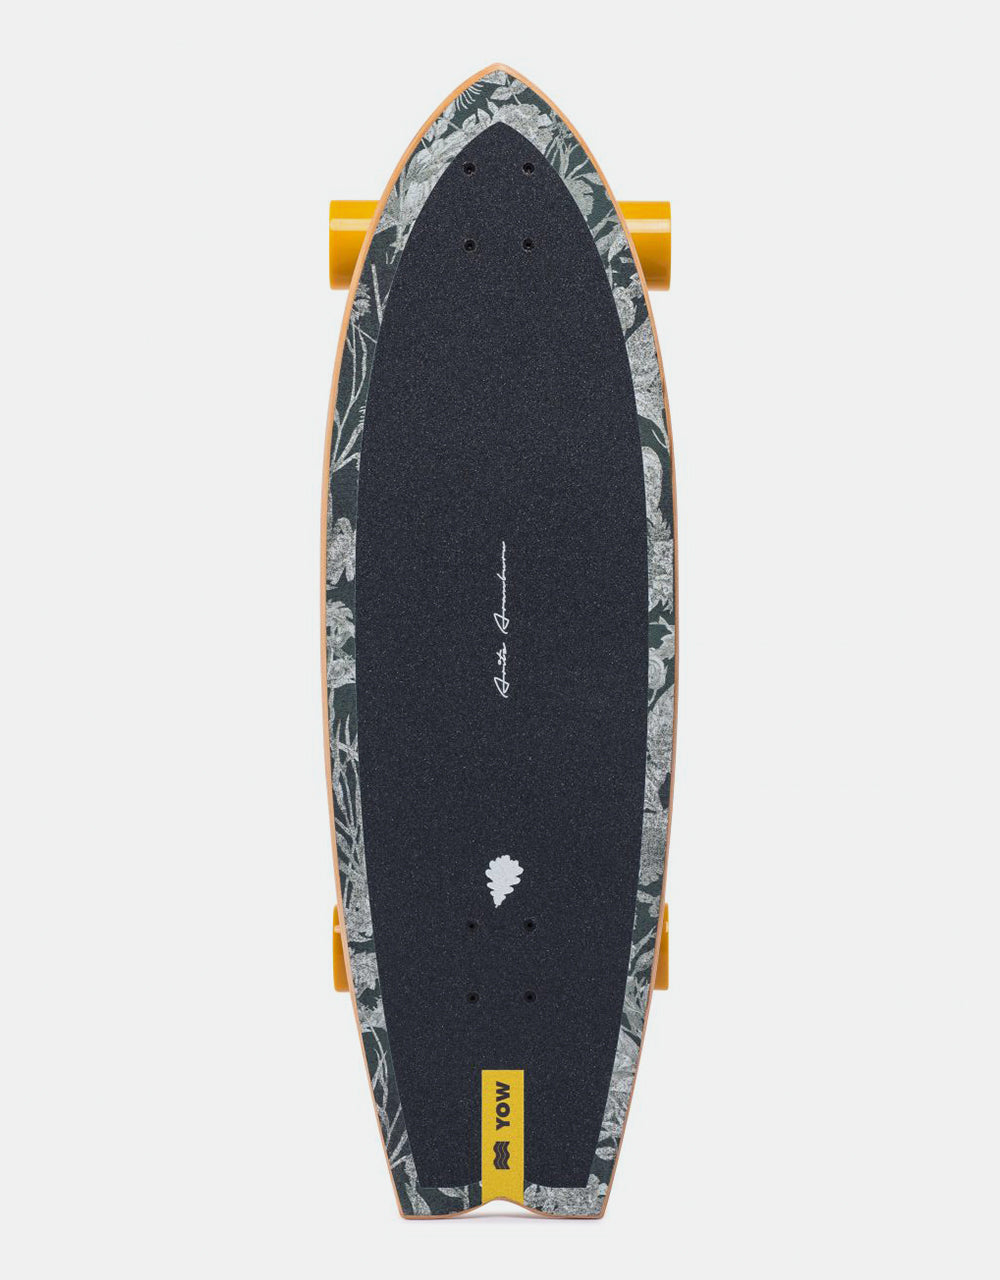 YOW Aritz Aranburu SurfSkate Cruiser Skateboard - 10" x 32.5"